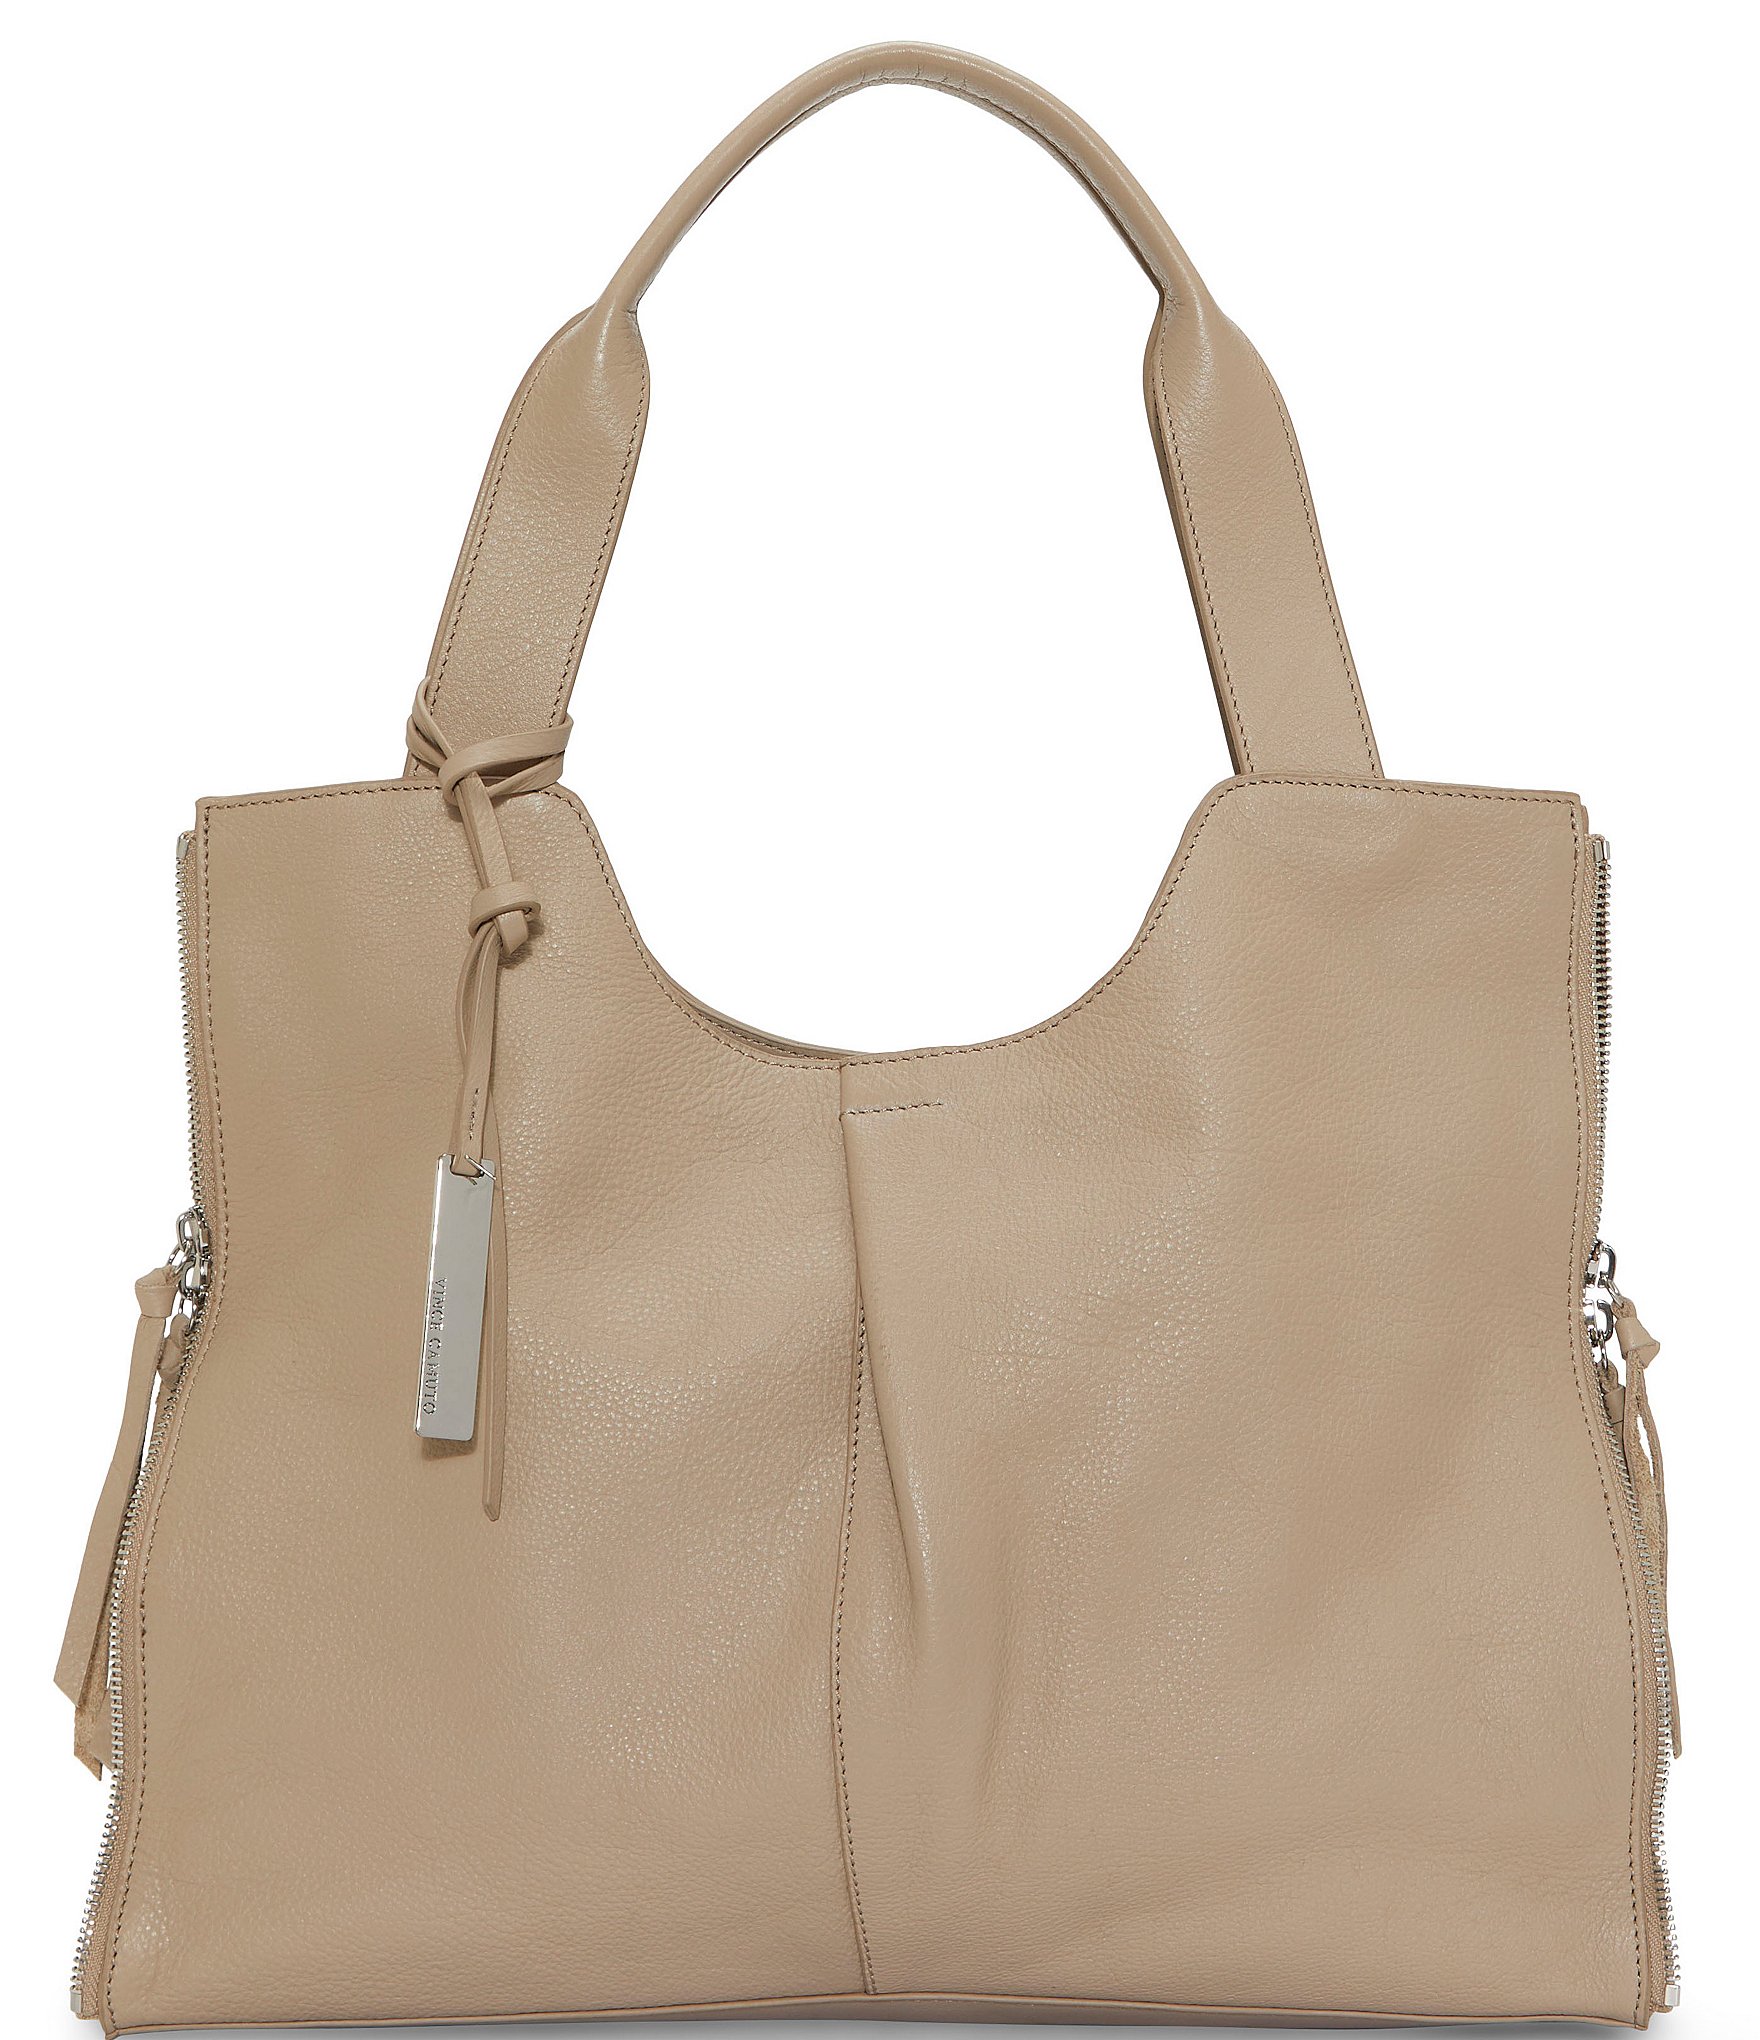 Find Your Next Favorite Bag in Vince's New Handbag Collection - PurseBlog